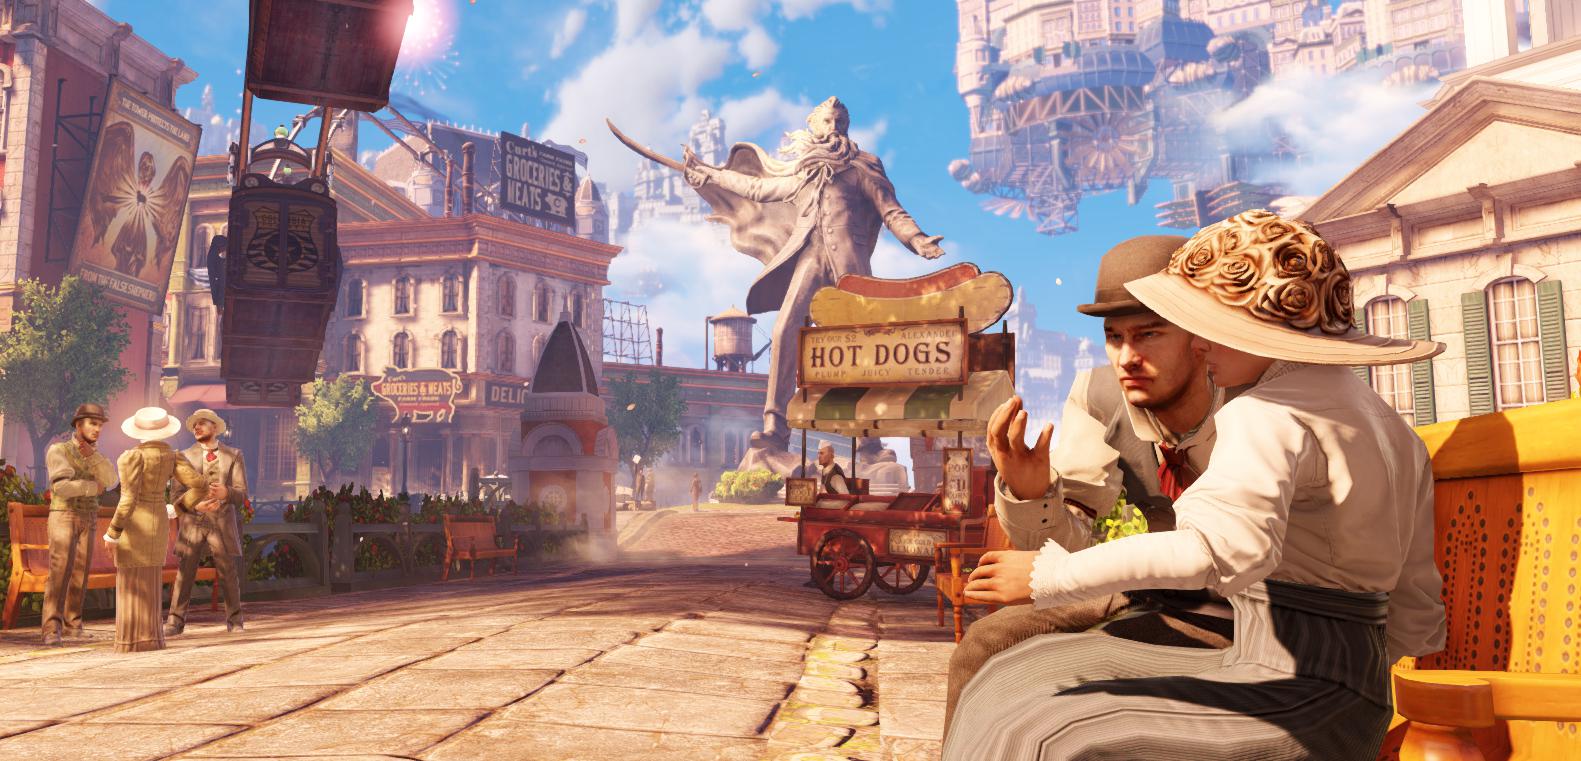 Powrót do pięknego podniebnego miasta - odświeżona grafika w BioShock Infinite